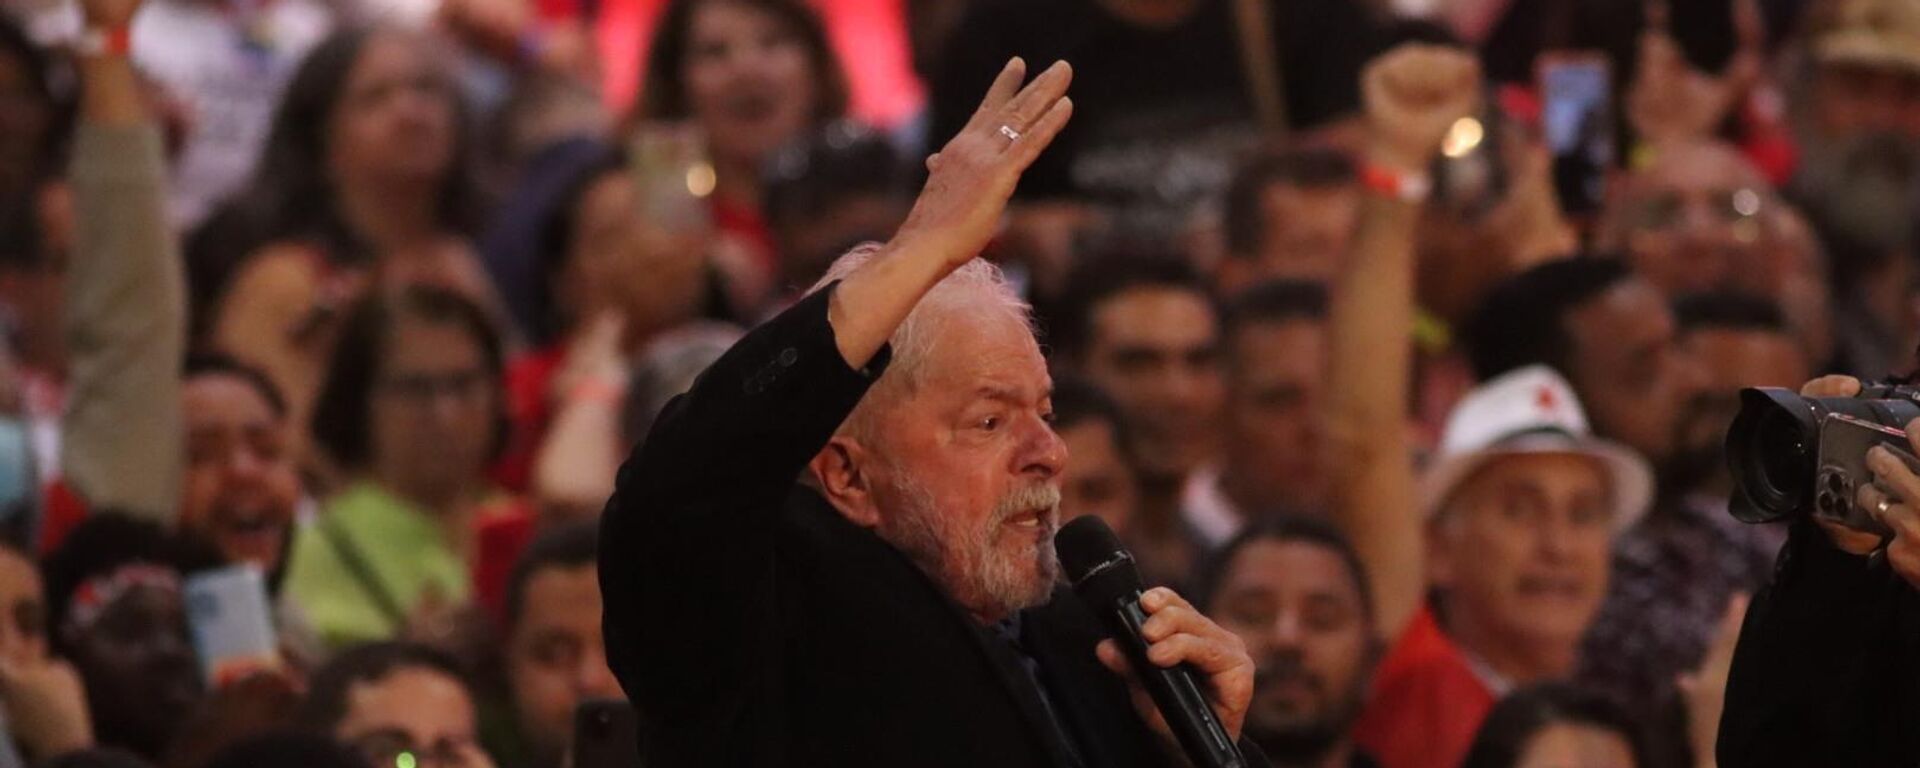 O ex-presidente brasileiro Luiz Inácio Lula da Silva (PT) discursa durante evento Lula abraça Minas, em Belo Horizonte, Minas Gerais, 9 de maio de 2022 - Sputnik Brasil, 1920, 10.05.2022